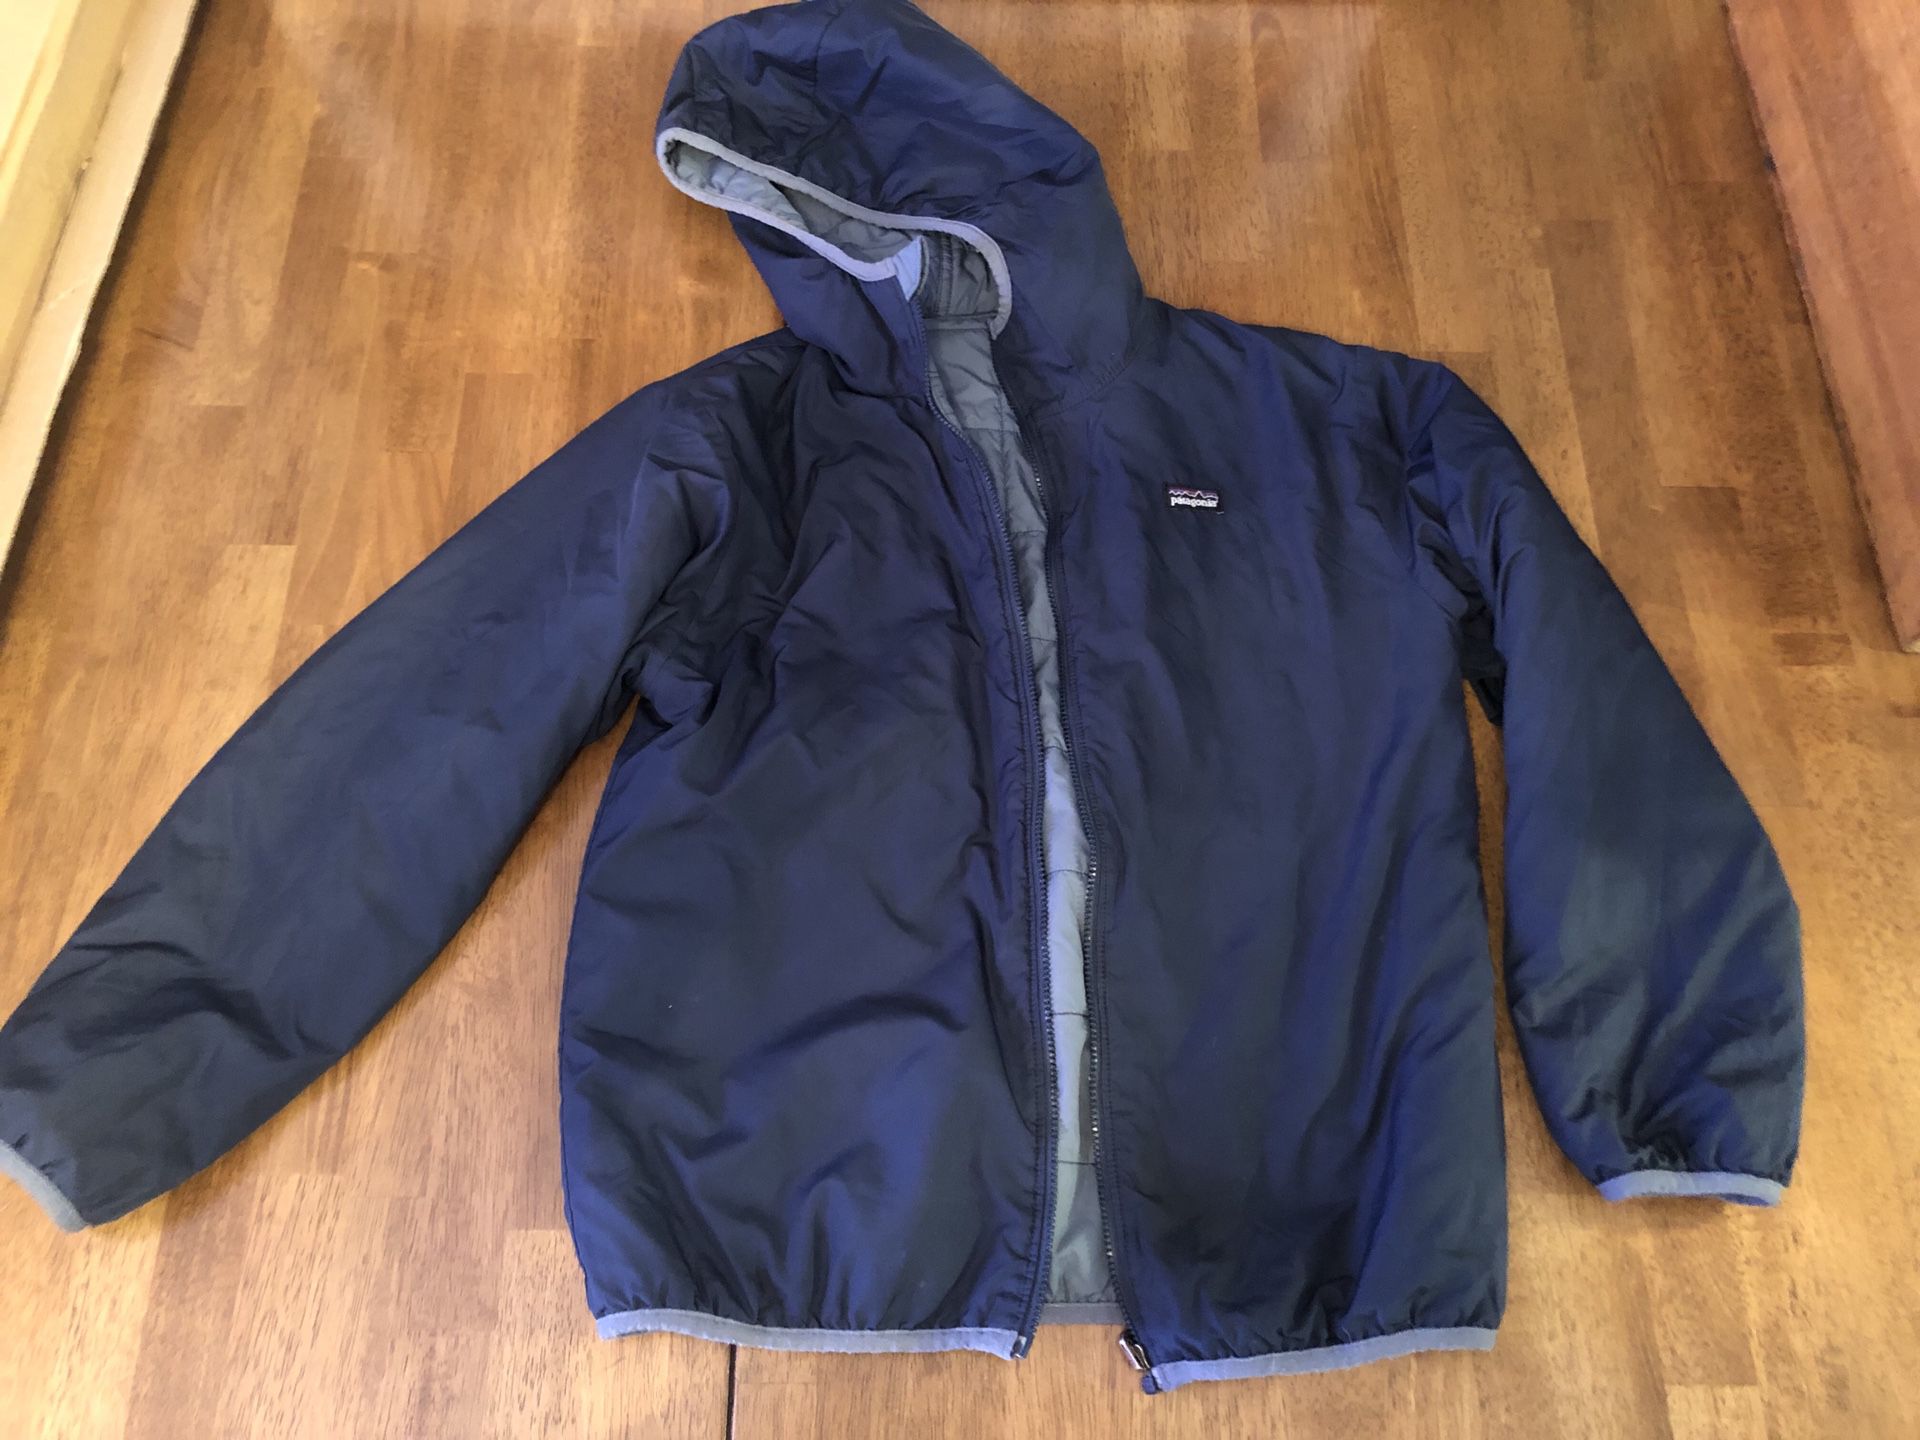 Patagonia reversible jacket